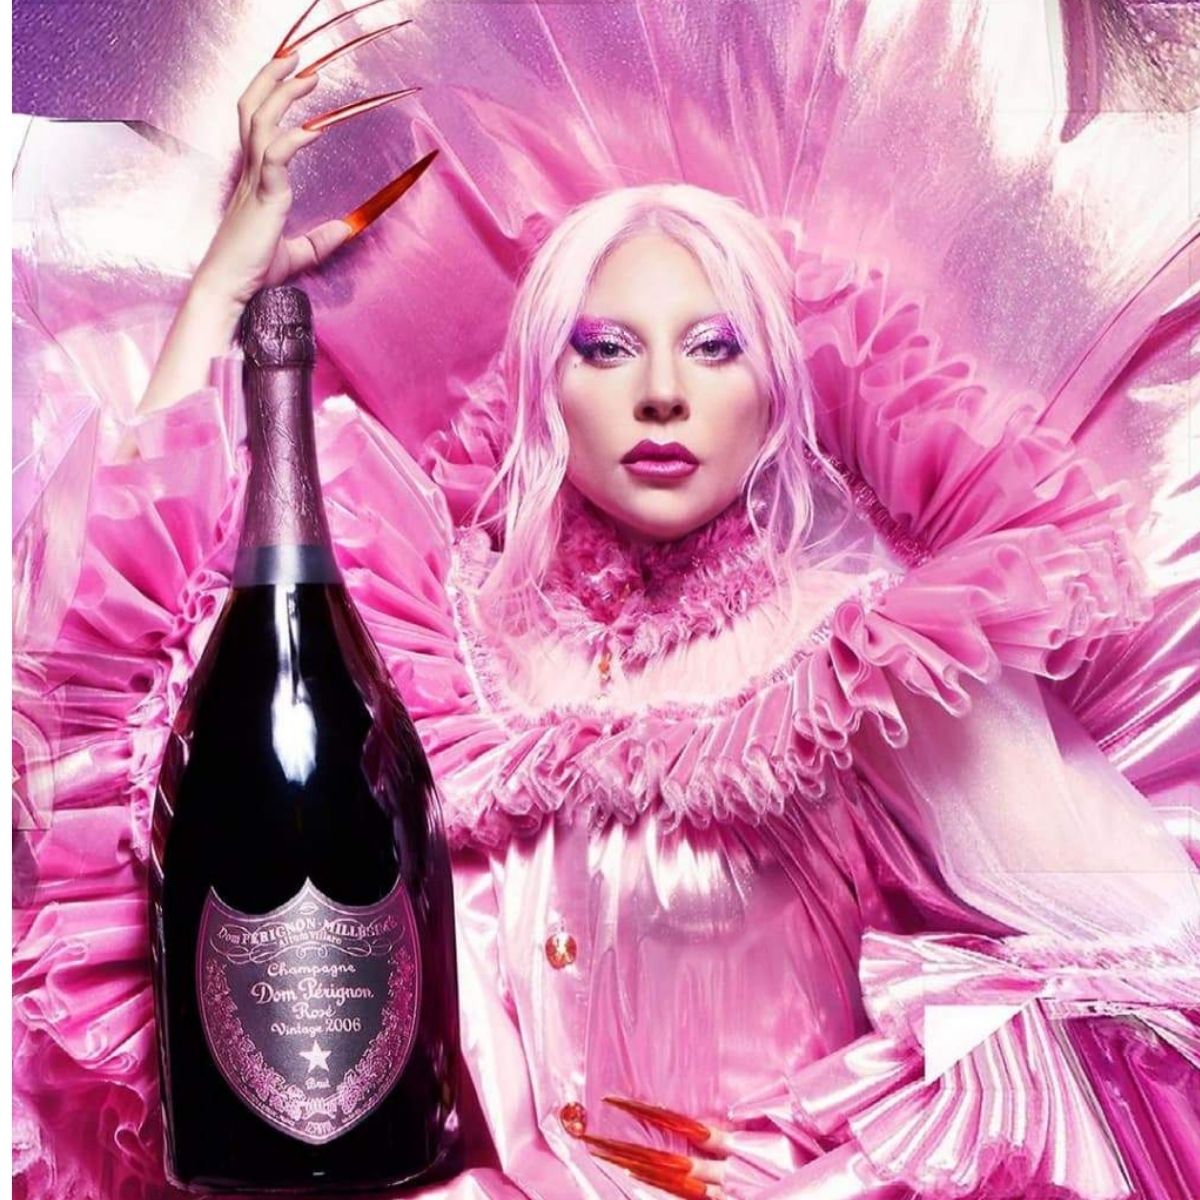 Lady Gaga dans une séance de photos pour la campagne publicitaire de Dom Pérignon